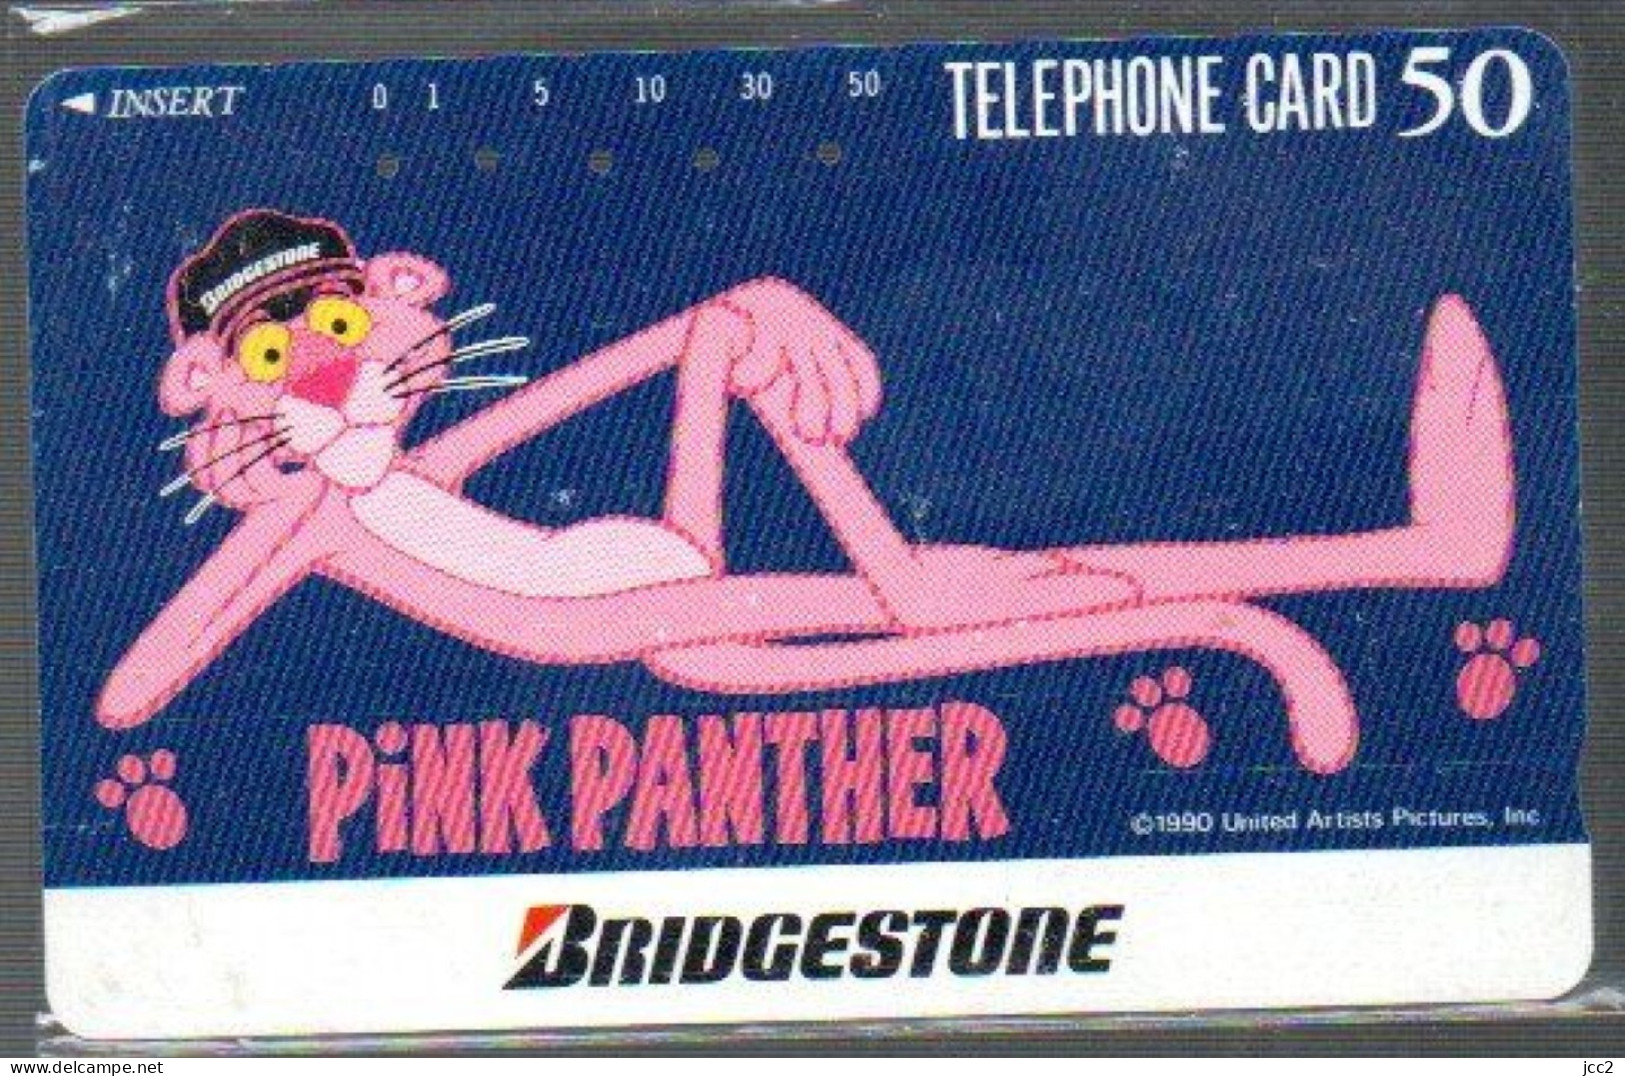 Pink Panther - Comics